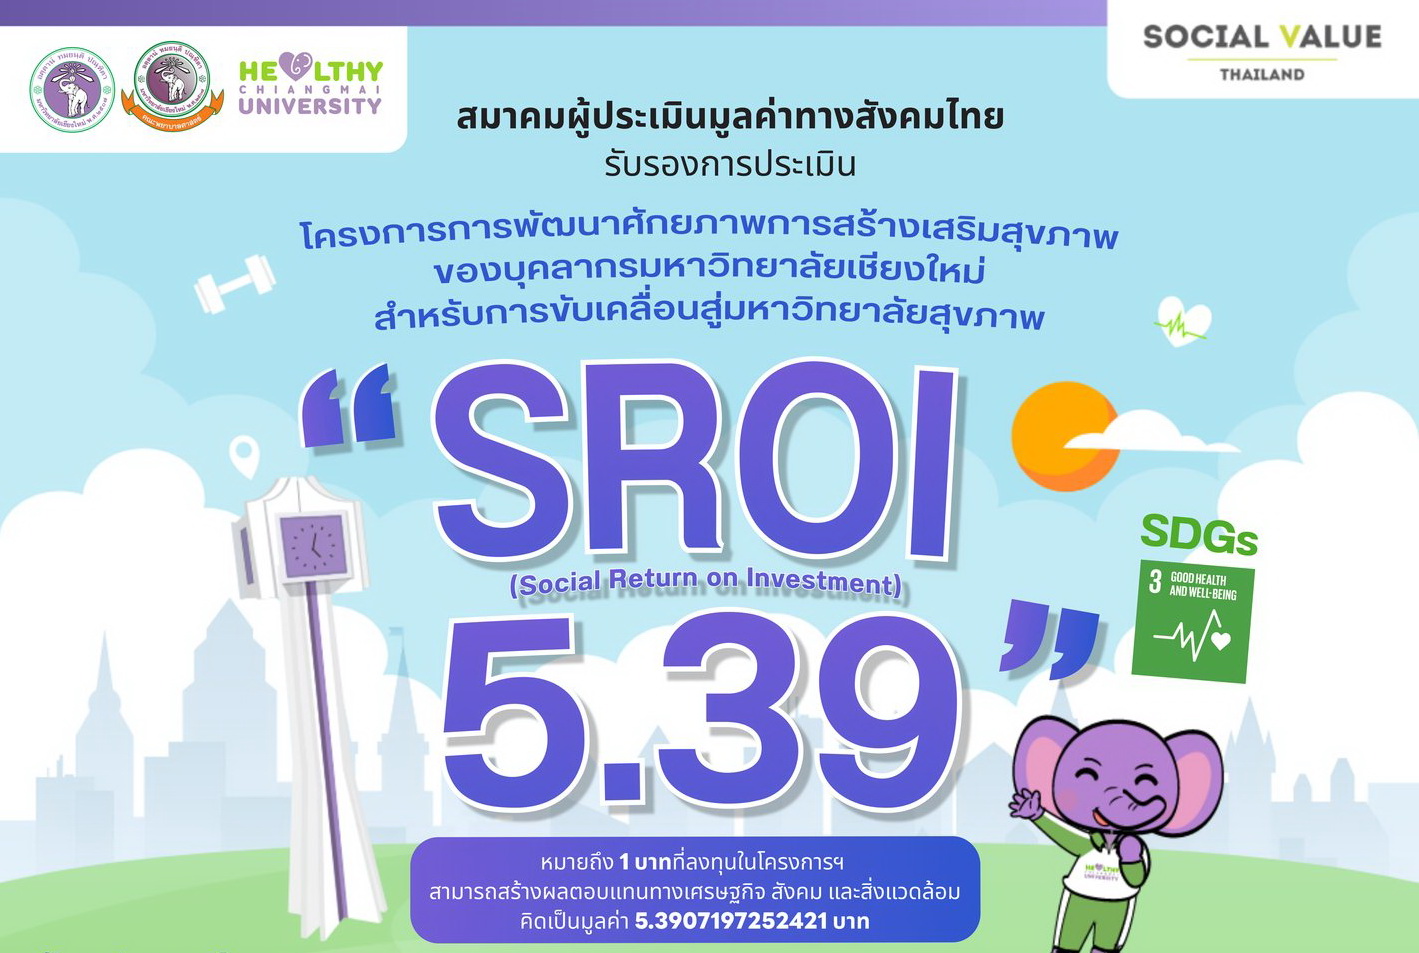 
	โครงการ Healthy CMU ได้รับการรับรอง SROI 5.39 จากสมาคมผู้ประเมินมูลค่าทางสังคมไทย
